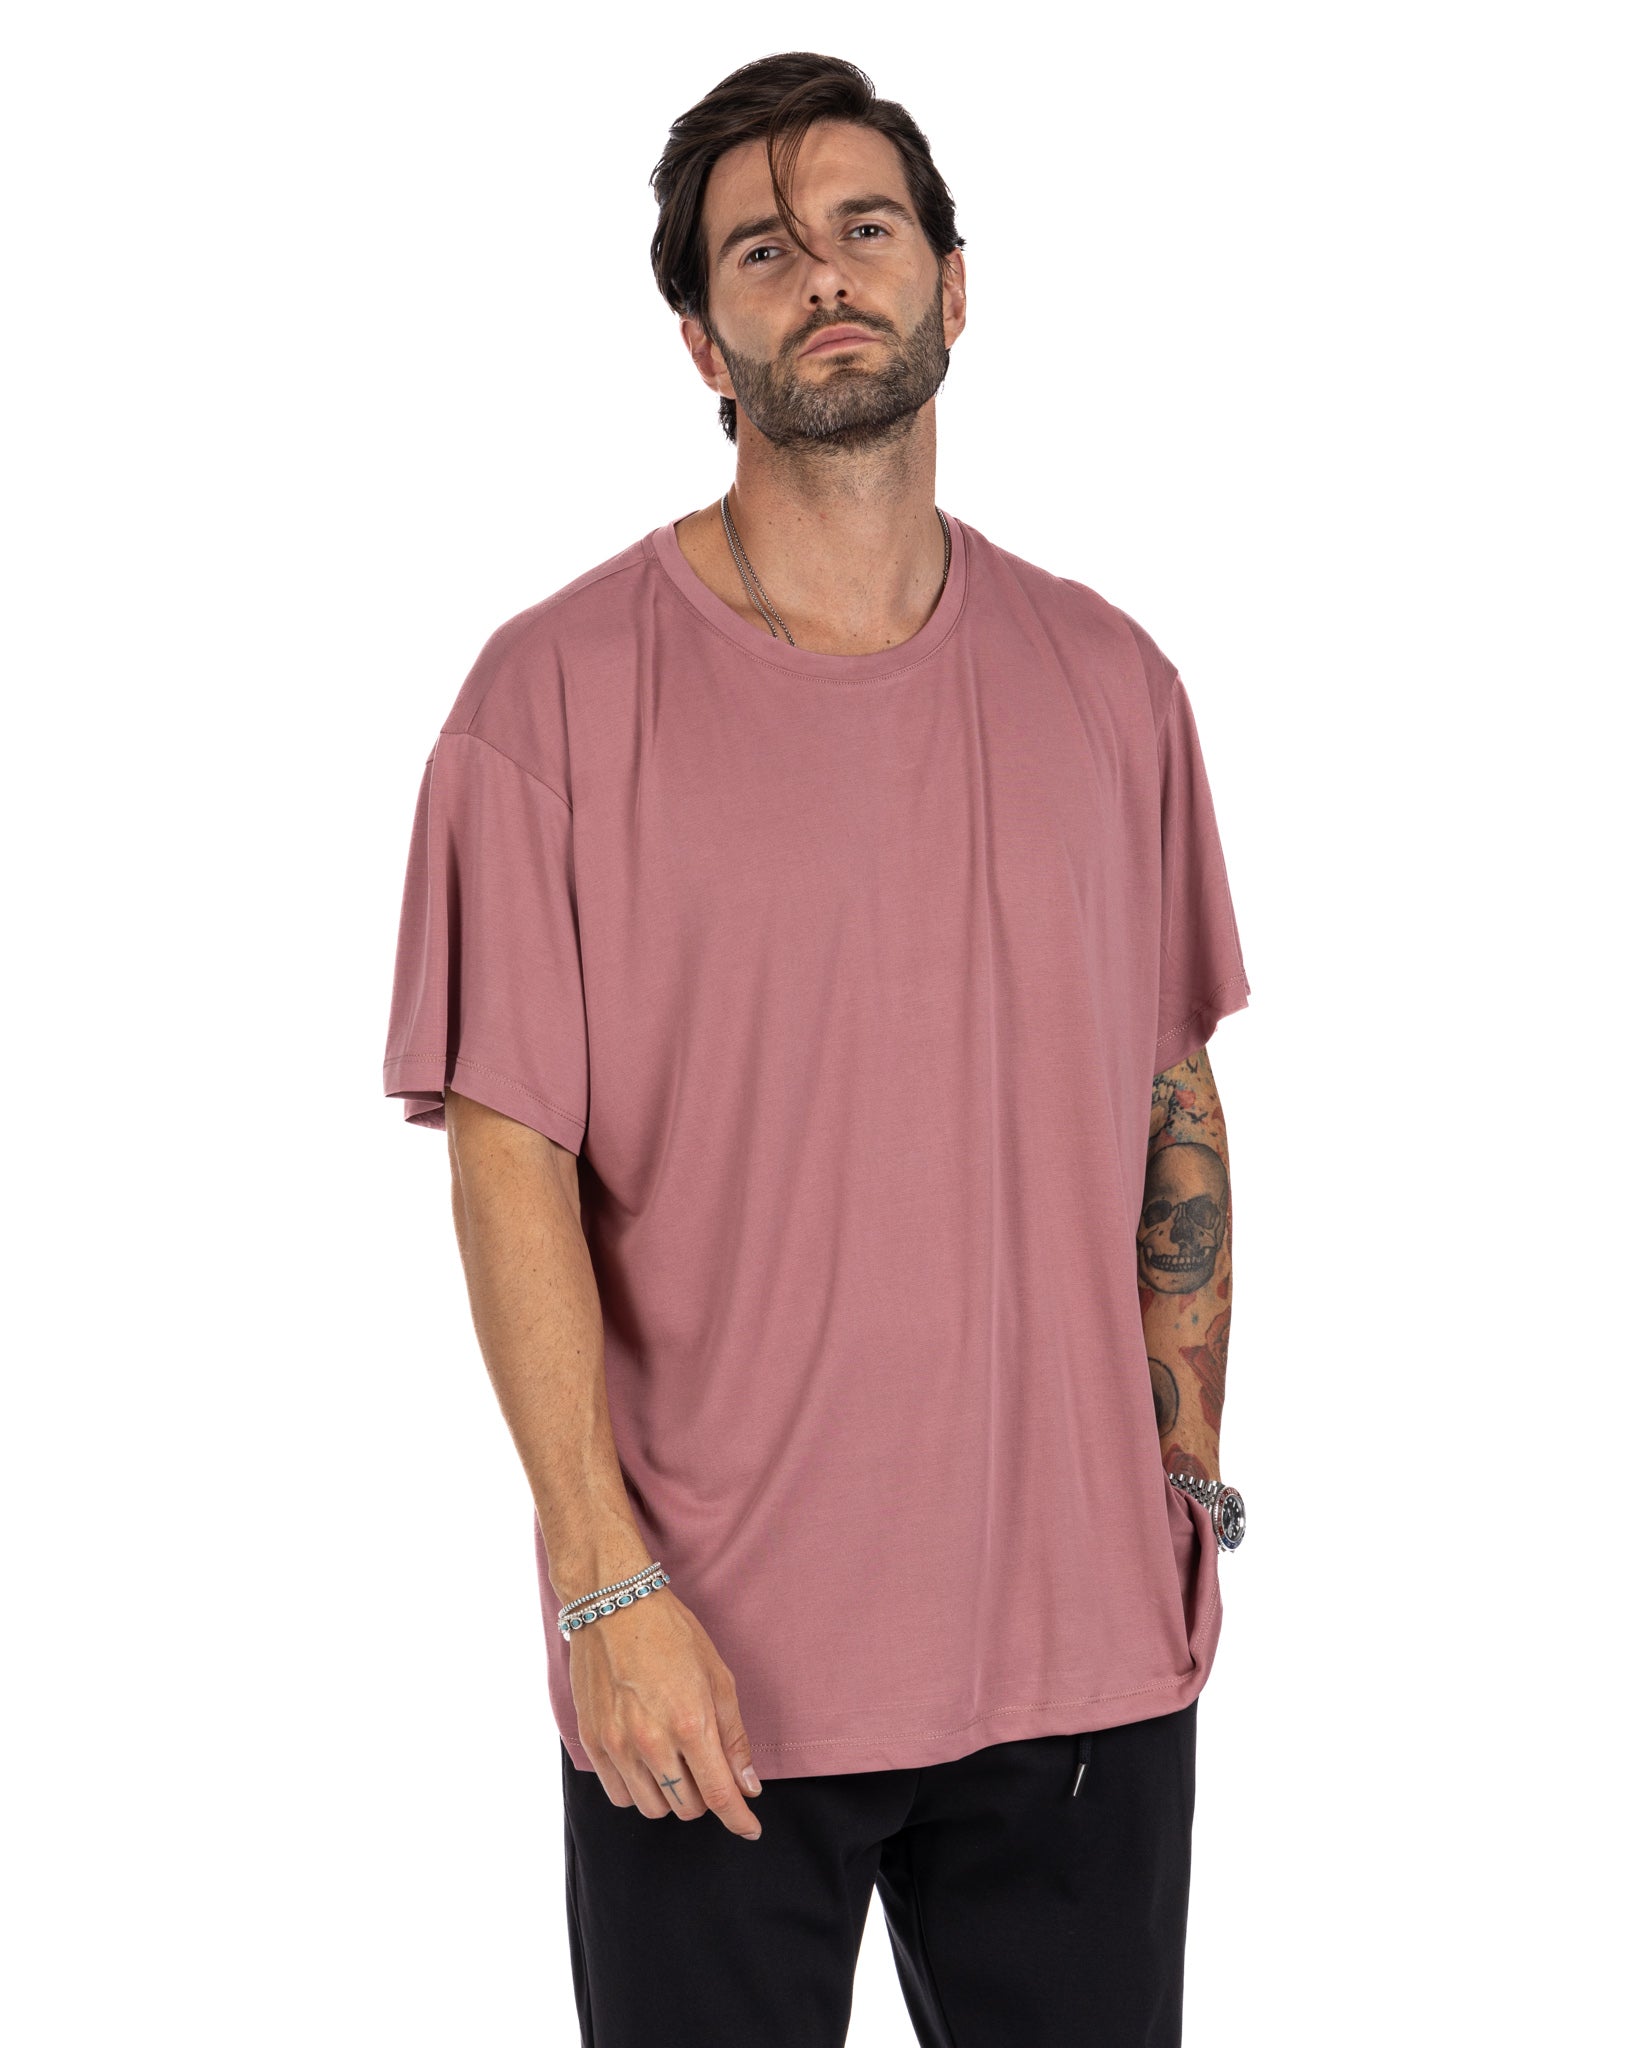 Owen - t-shirt rosa oversize